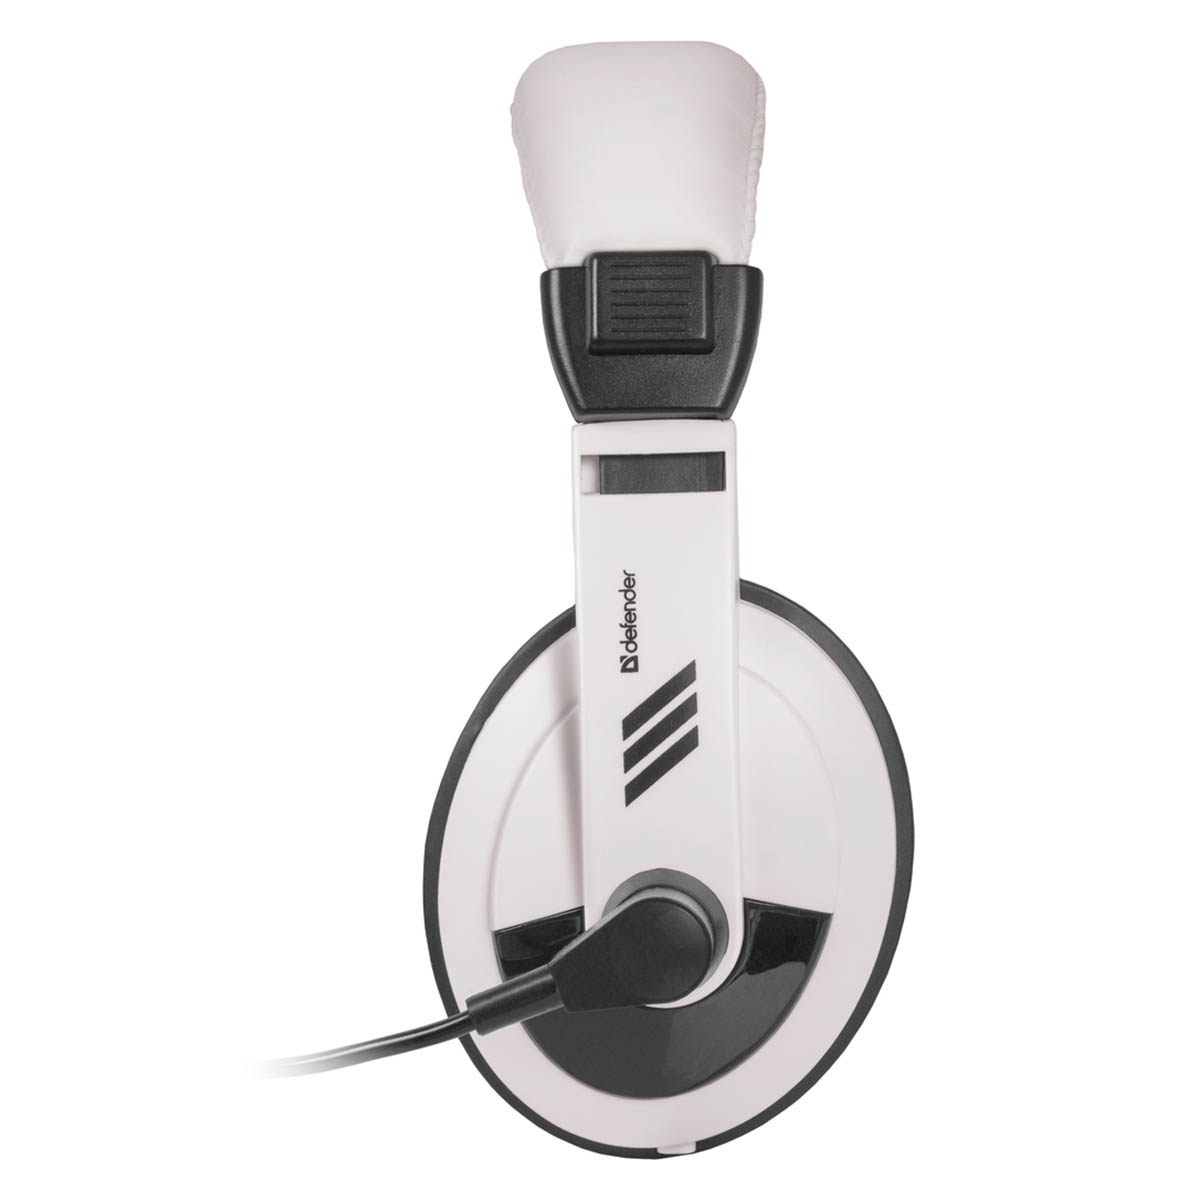 Гарнитура (наушники с микрофоном) проводная полноразмерная DEFENDER Gryphon 750, цвет белый